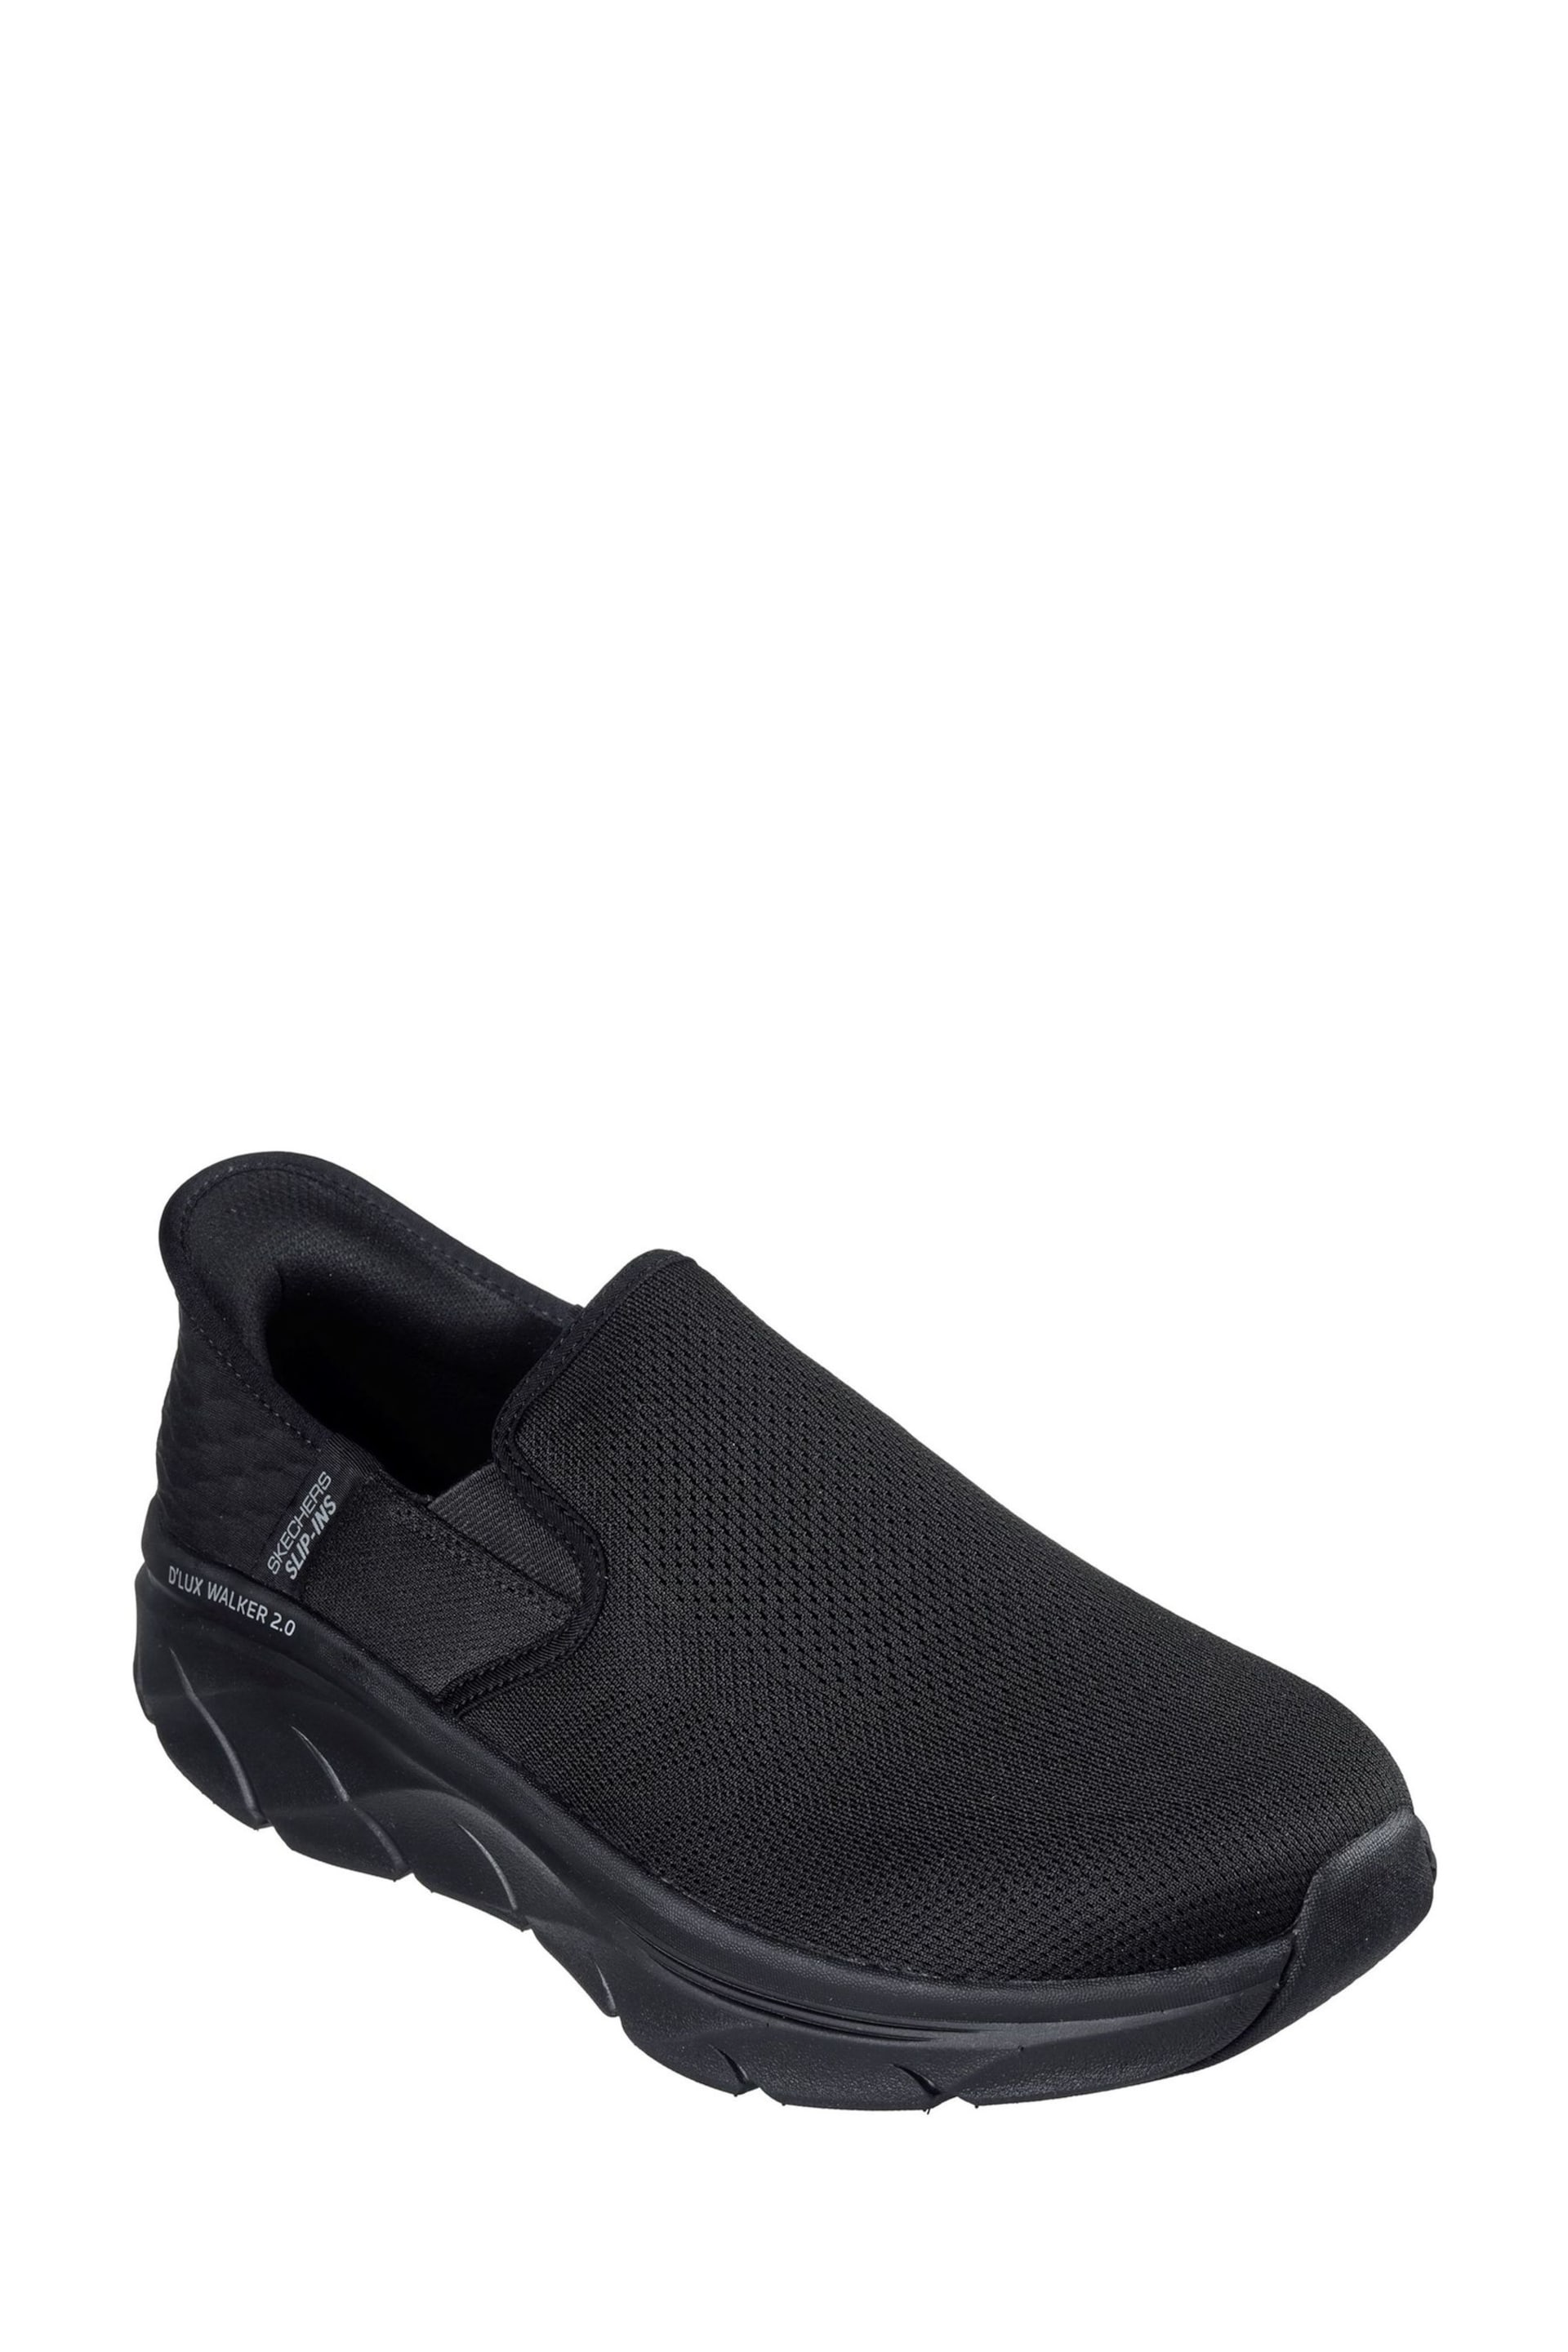 Skechers Black D'Lux Walker 2.0 Reeler Shoes - Image 1 of 3